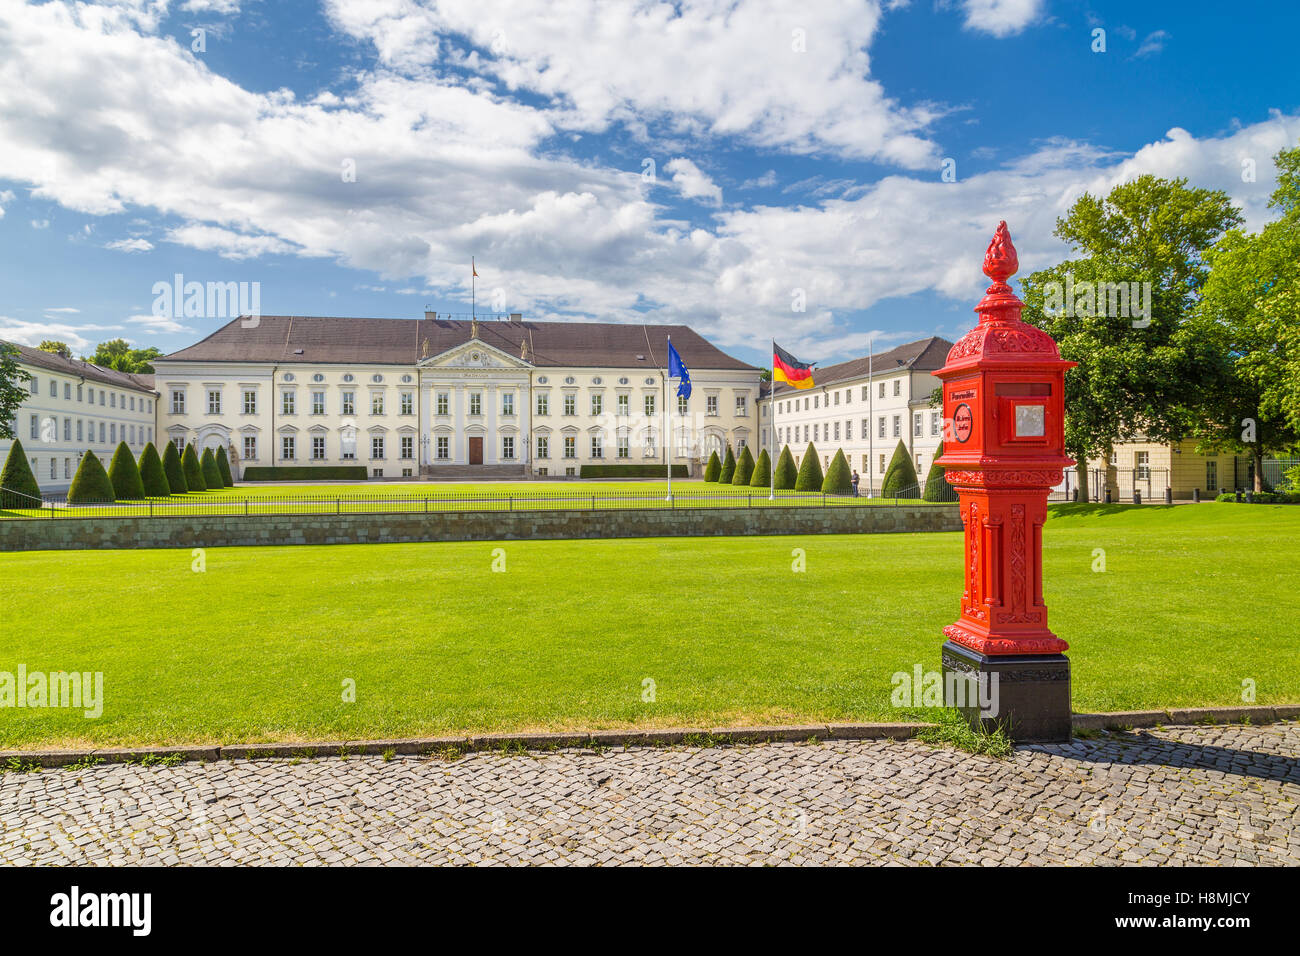 Klassische Ansicht des berühmten Schloss Bellevue, dem Amtssitz des Bundespräsidenten, mit alten Feuer Post, Berlin, Deutschland Stockfoto